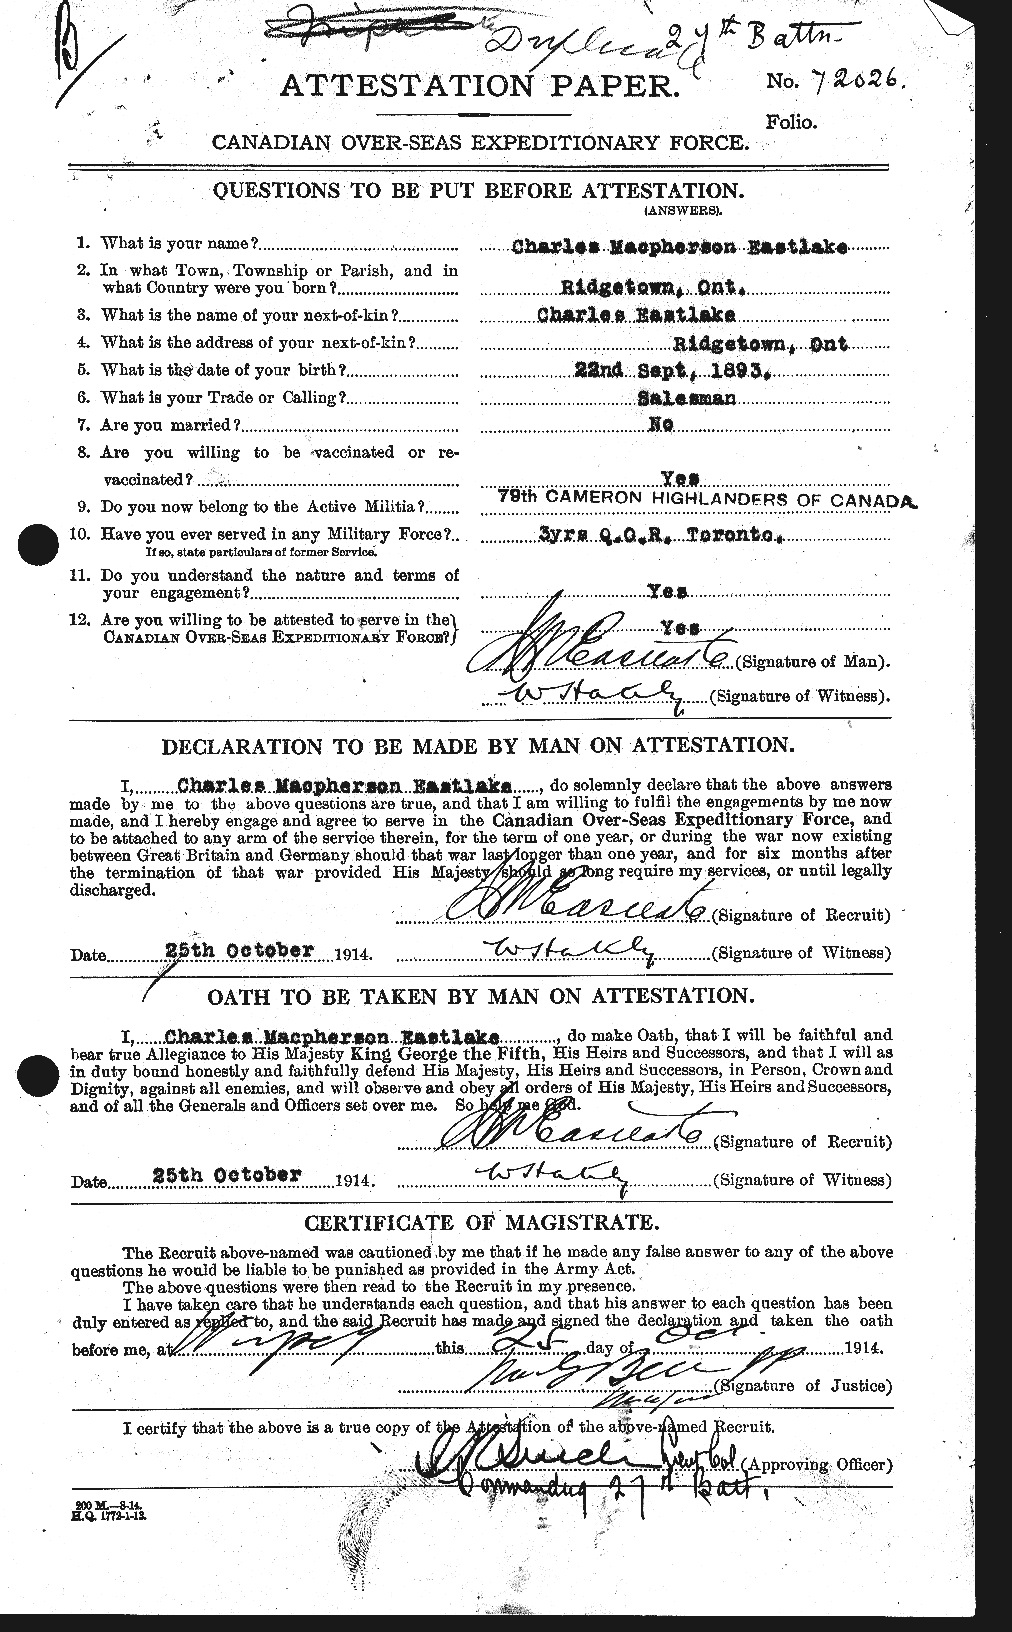 Dossiers du Personnel de la Première Guerre mondiale - CEC 307933a